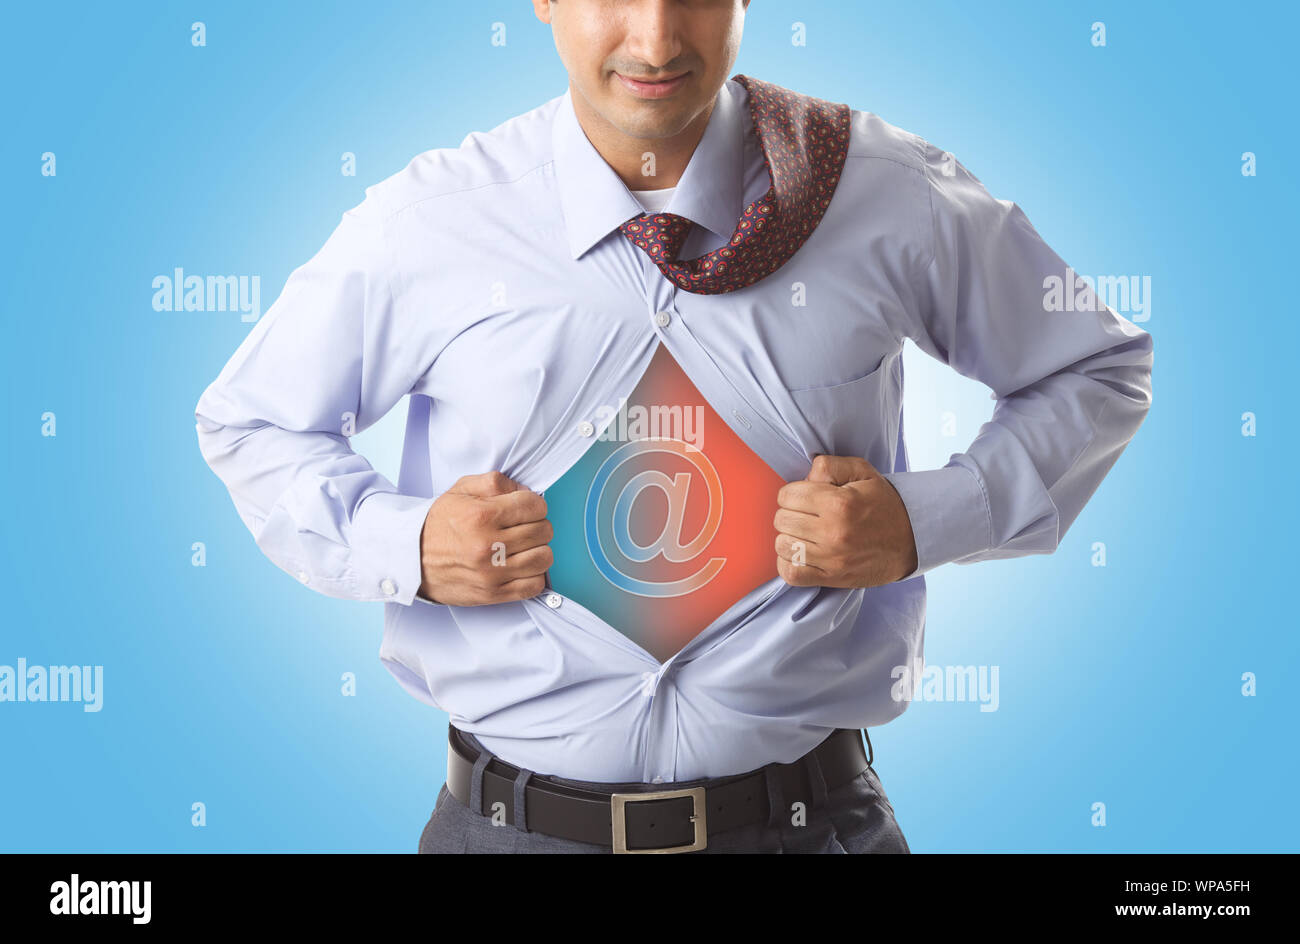 Super Geschäftsmann zerreißt sein Hemd, um das Symbol auf der Brust zu zeigen Stockfoto